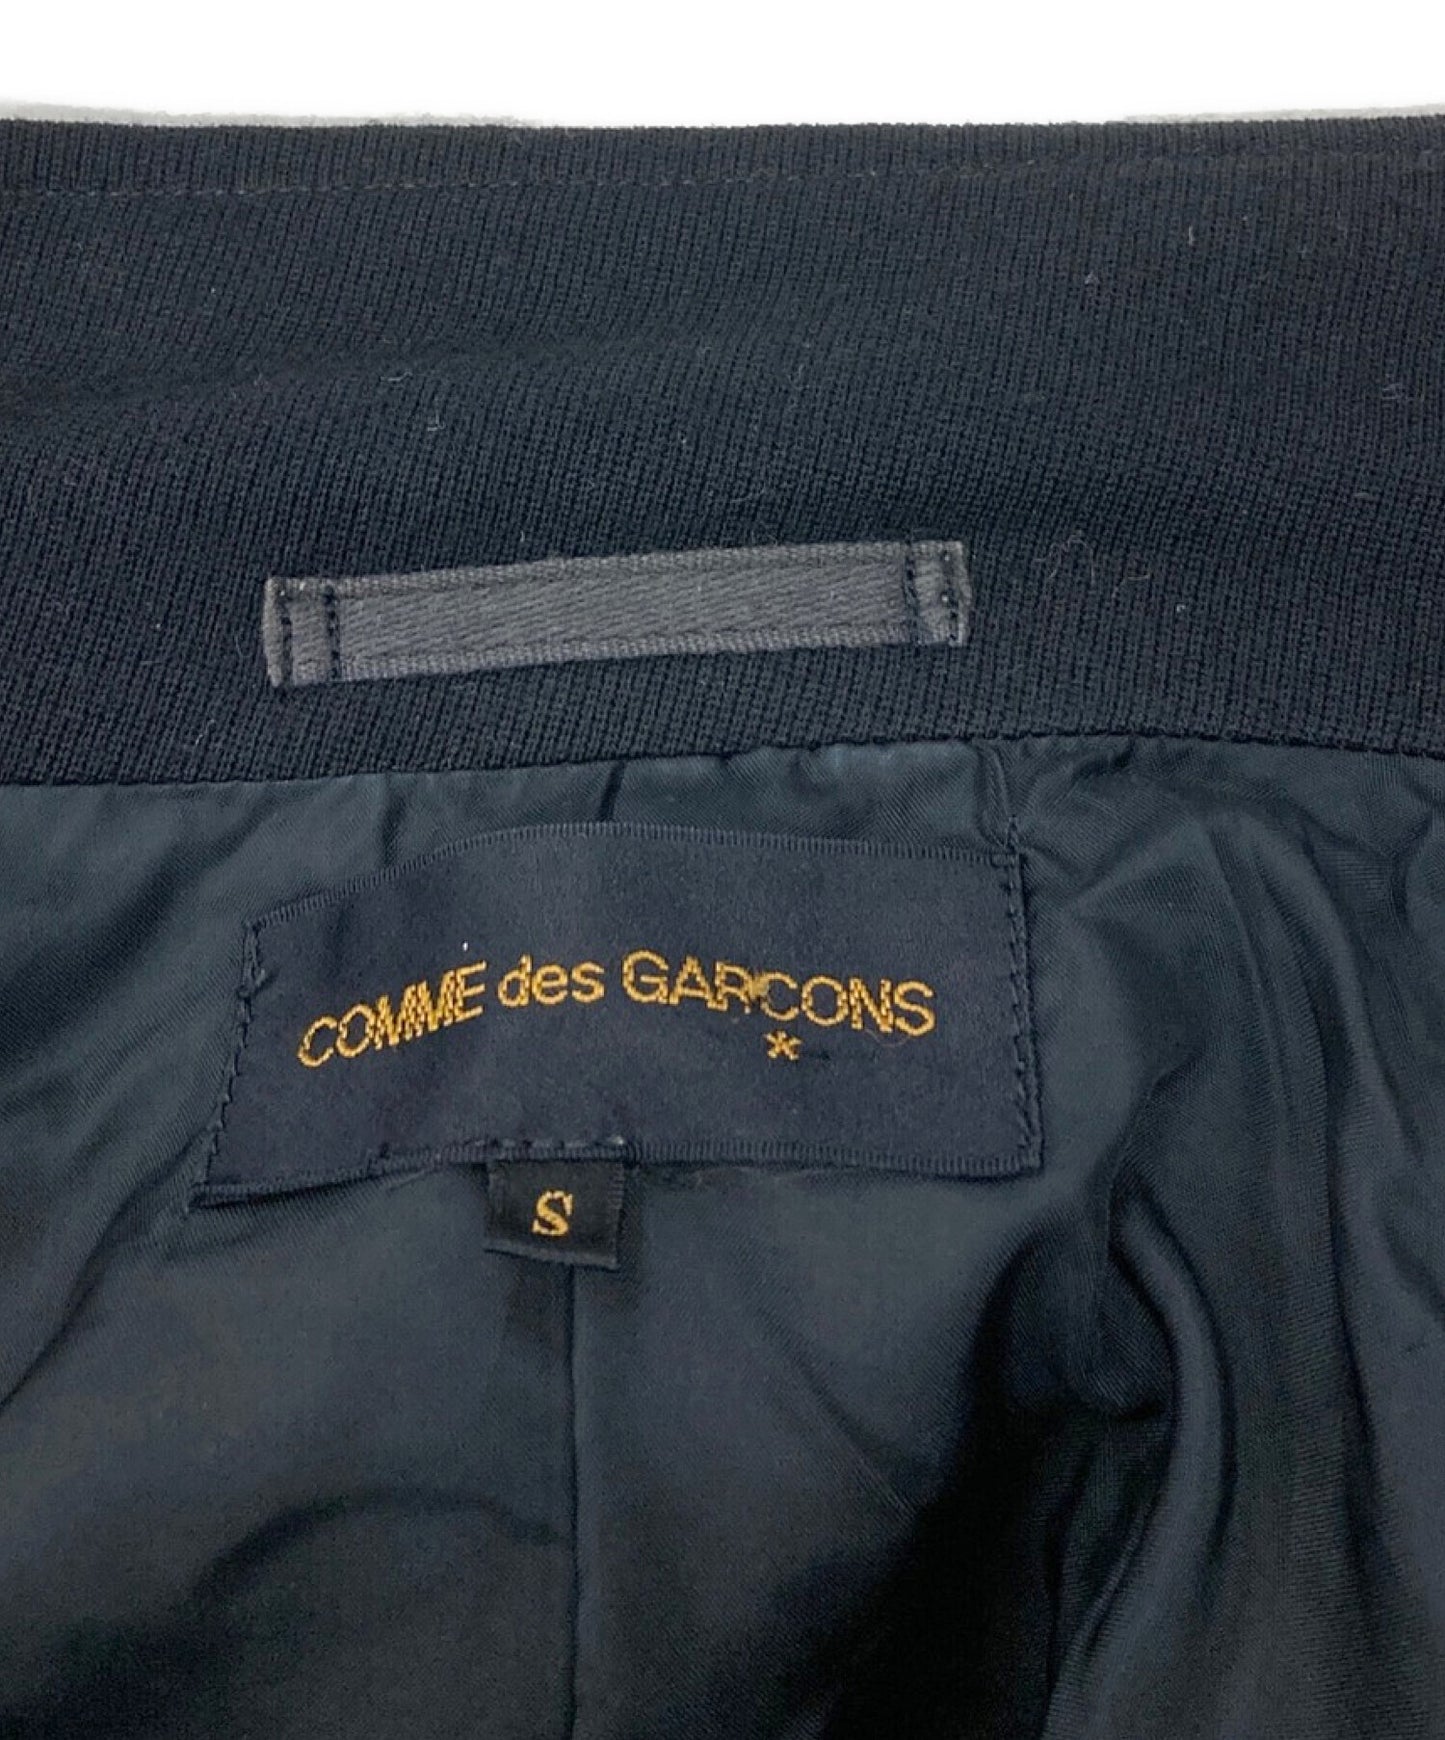 COMME DES GARCONS 89AW档案扩展坞设计夹克GJ-05001S